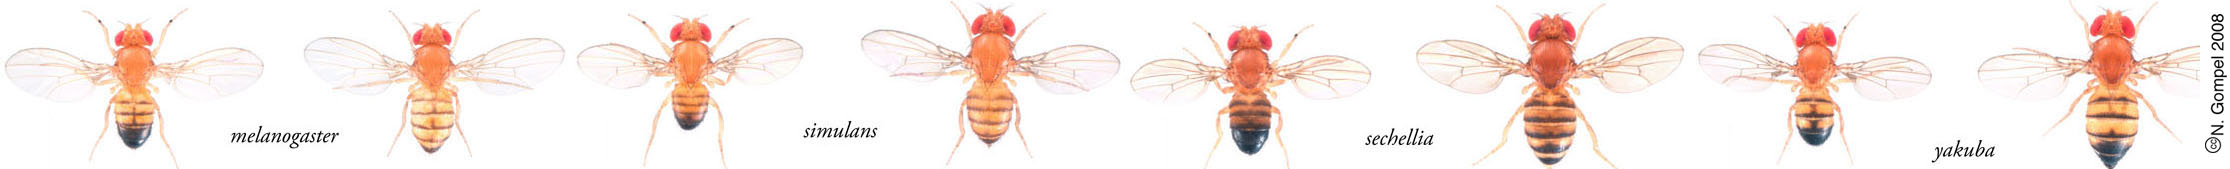 pictures of adult Drosophila flies